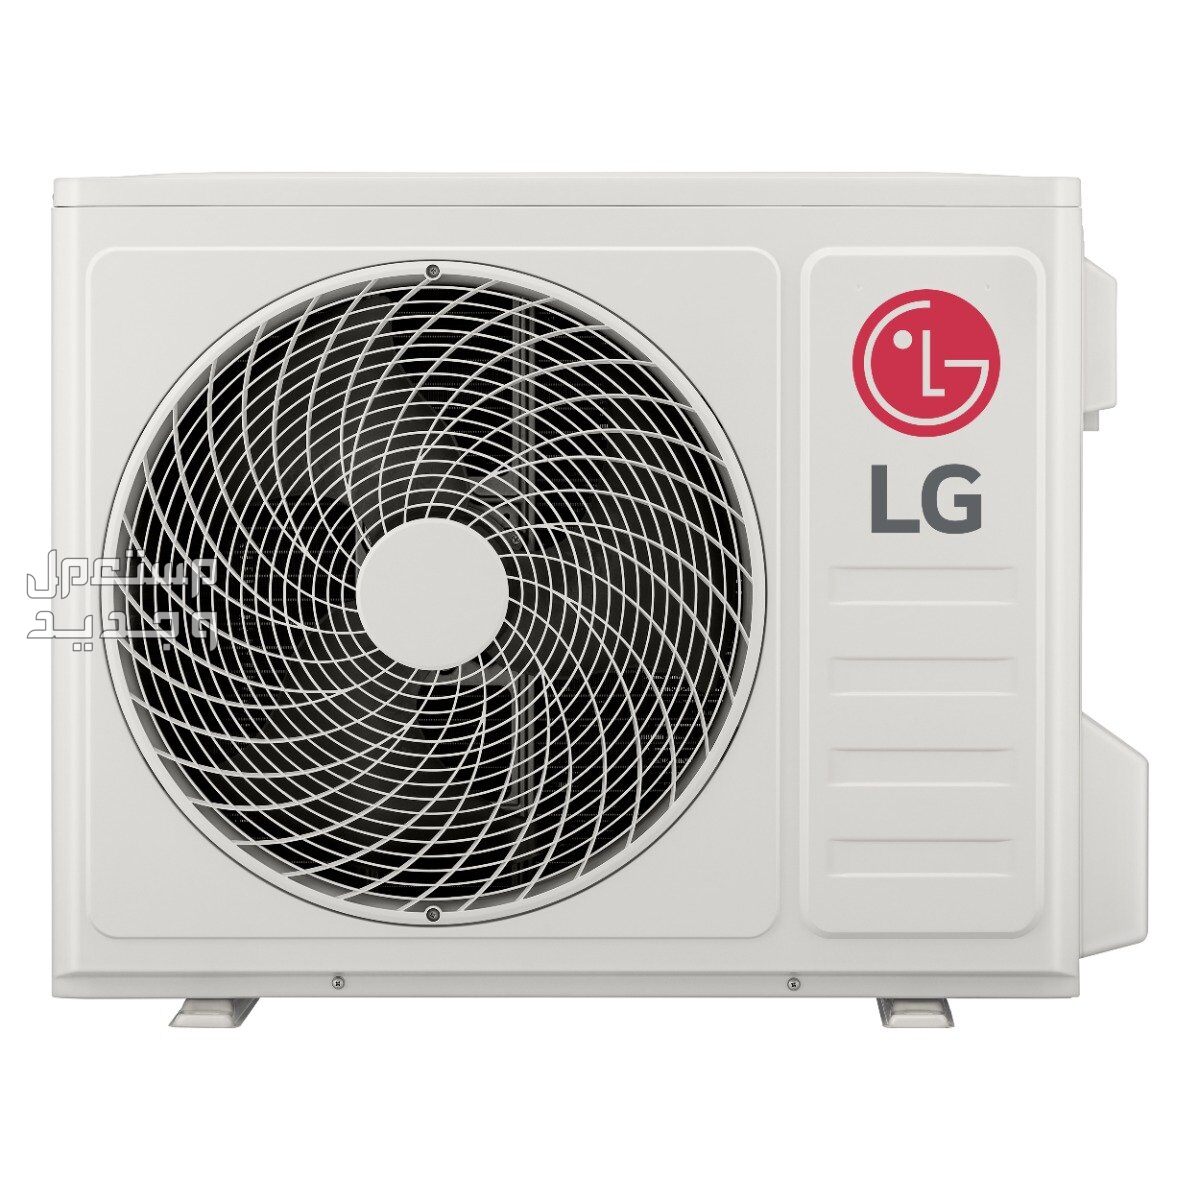 انواع حديثة من مكيفات المنيع بالمواصفات والصور والاسعار في جيبوتي مكيفات المنيع نوع LG موديل 
LO242H0NK0